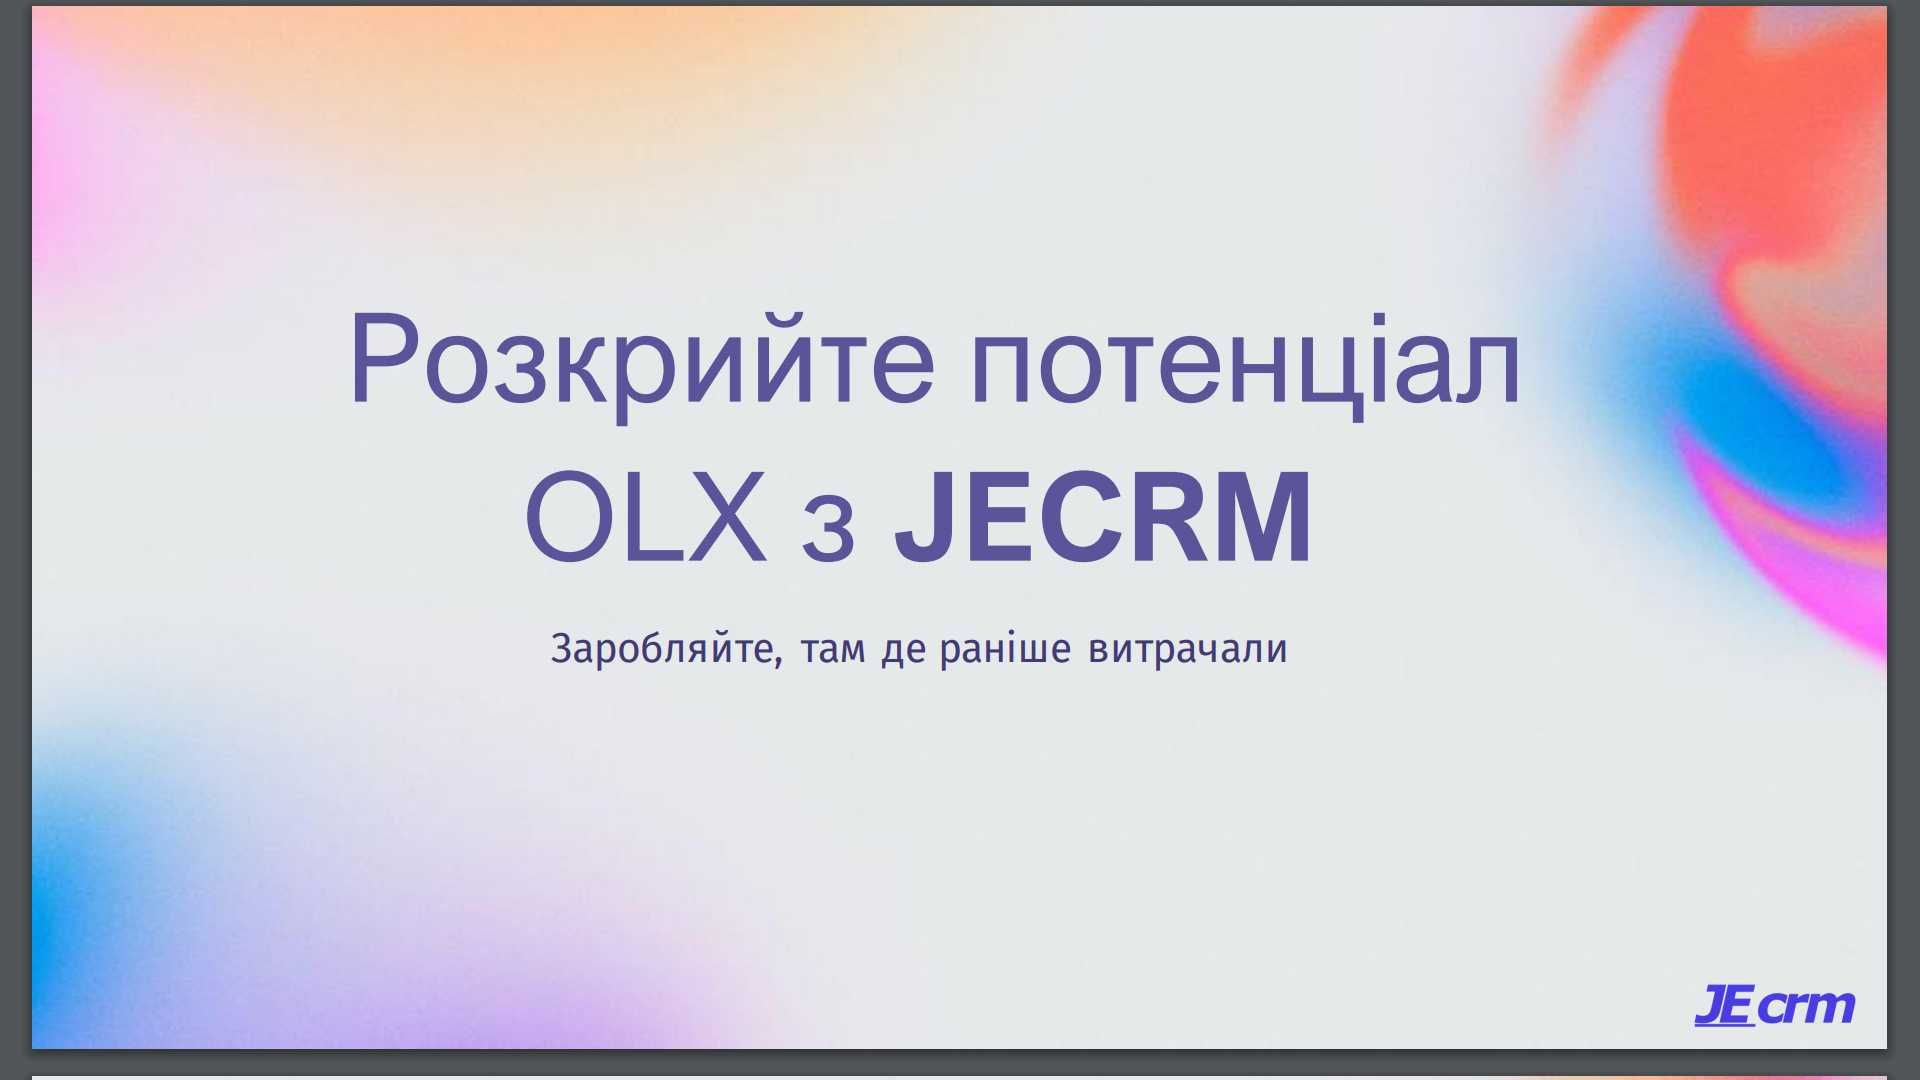 CRM для OLX це JECRM, багато переписок в OLX, продаєте в роздріб і опт